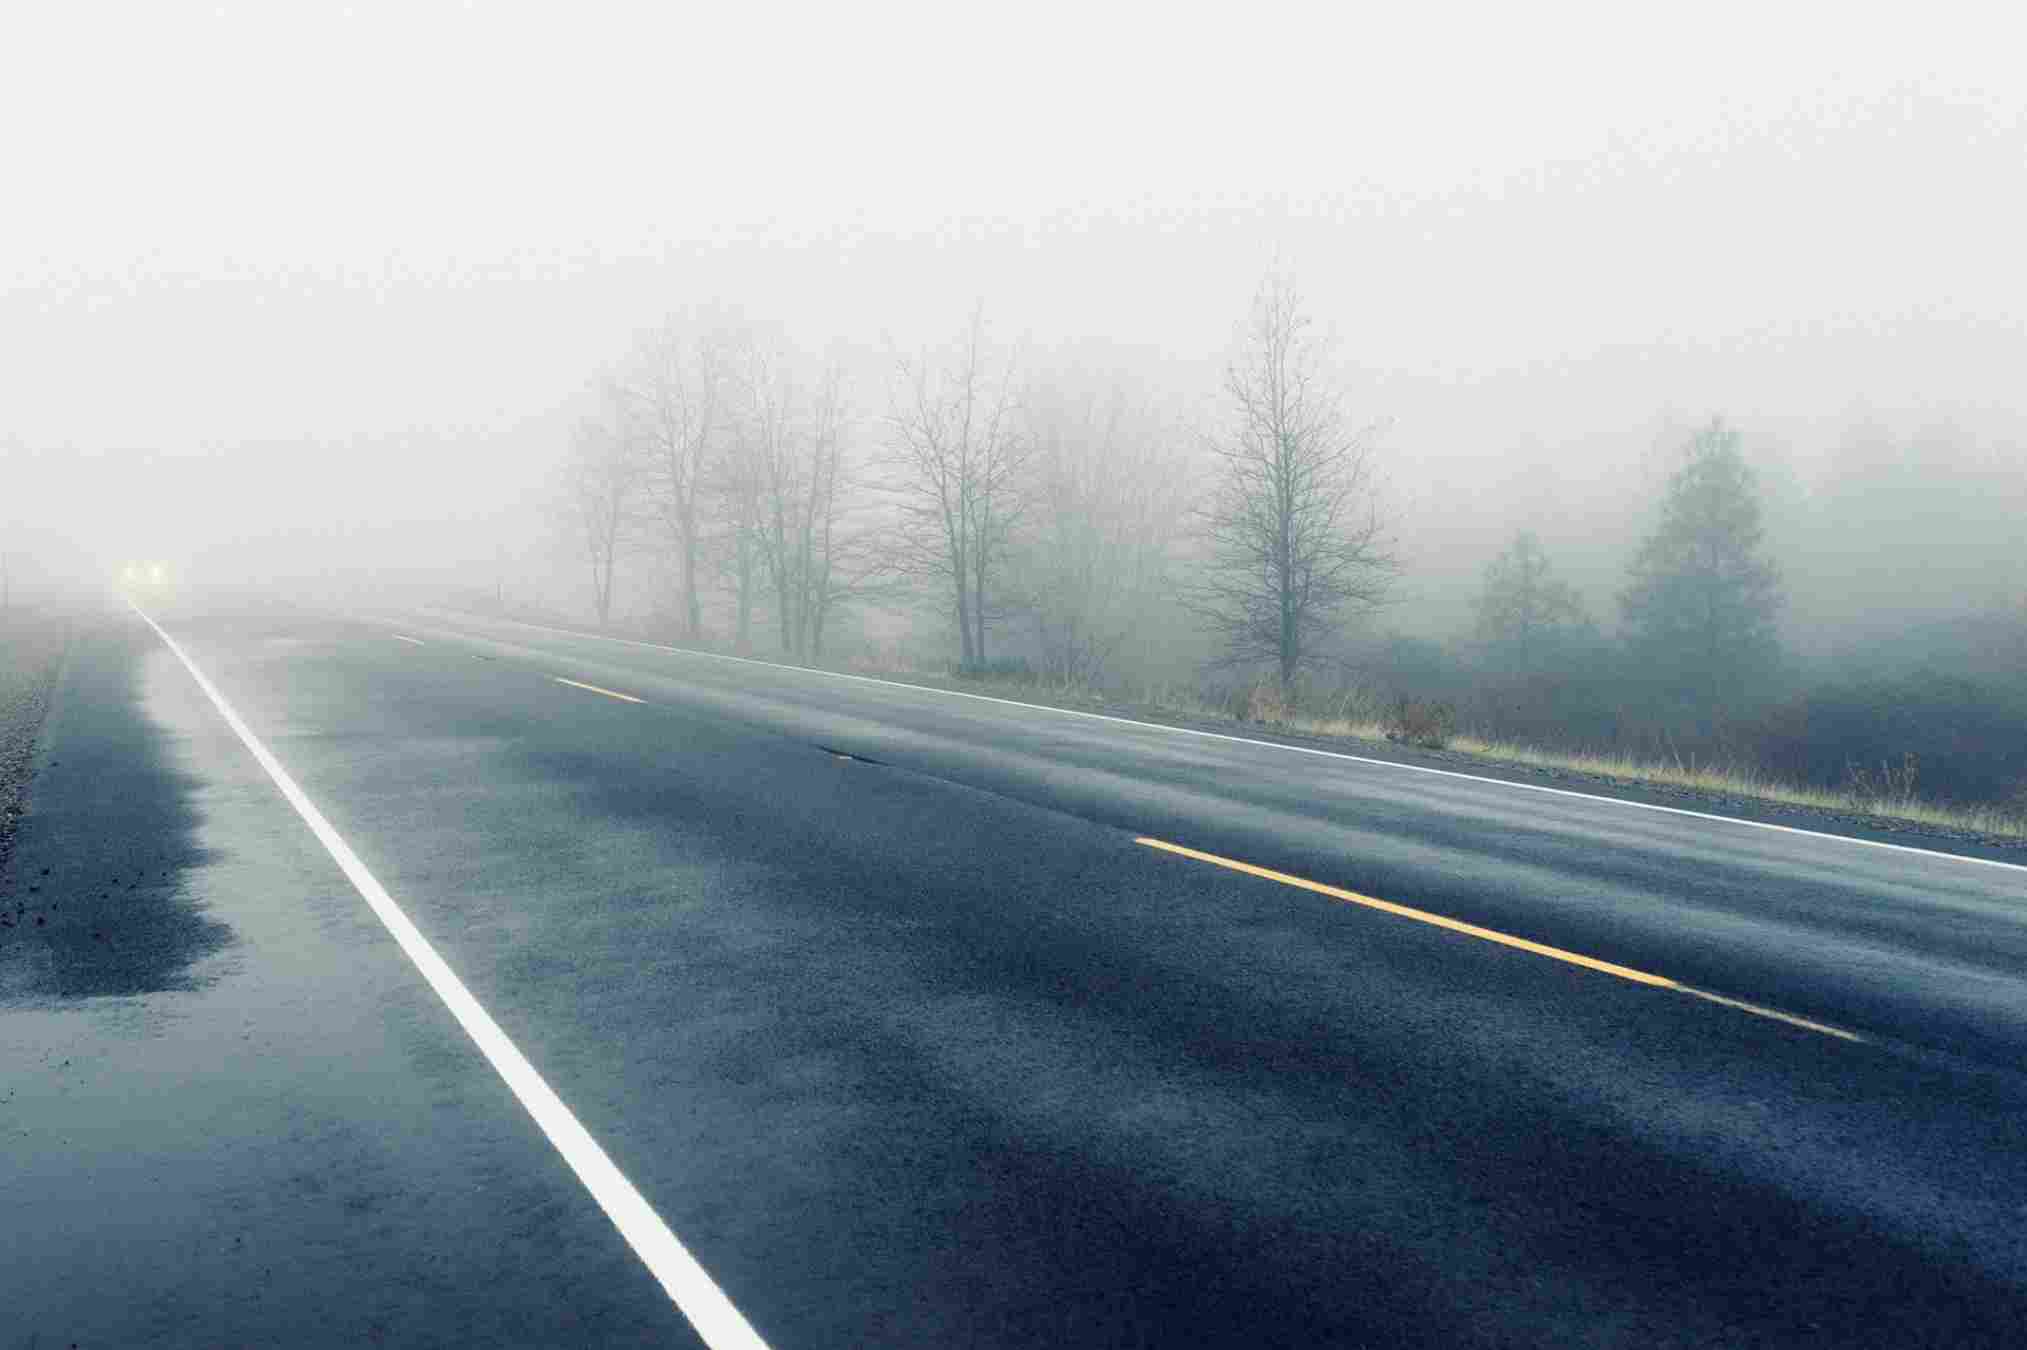 ¡Cuenta con las nieblas domingo en la carretera! La mala visibilidad puede provocar muchos accidentes / PIXABAY